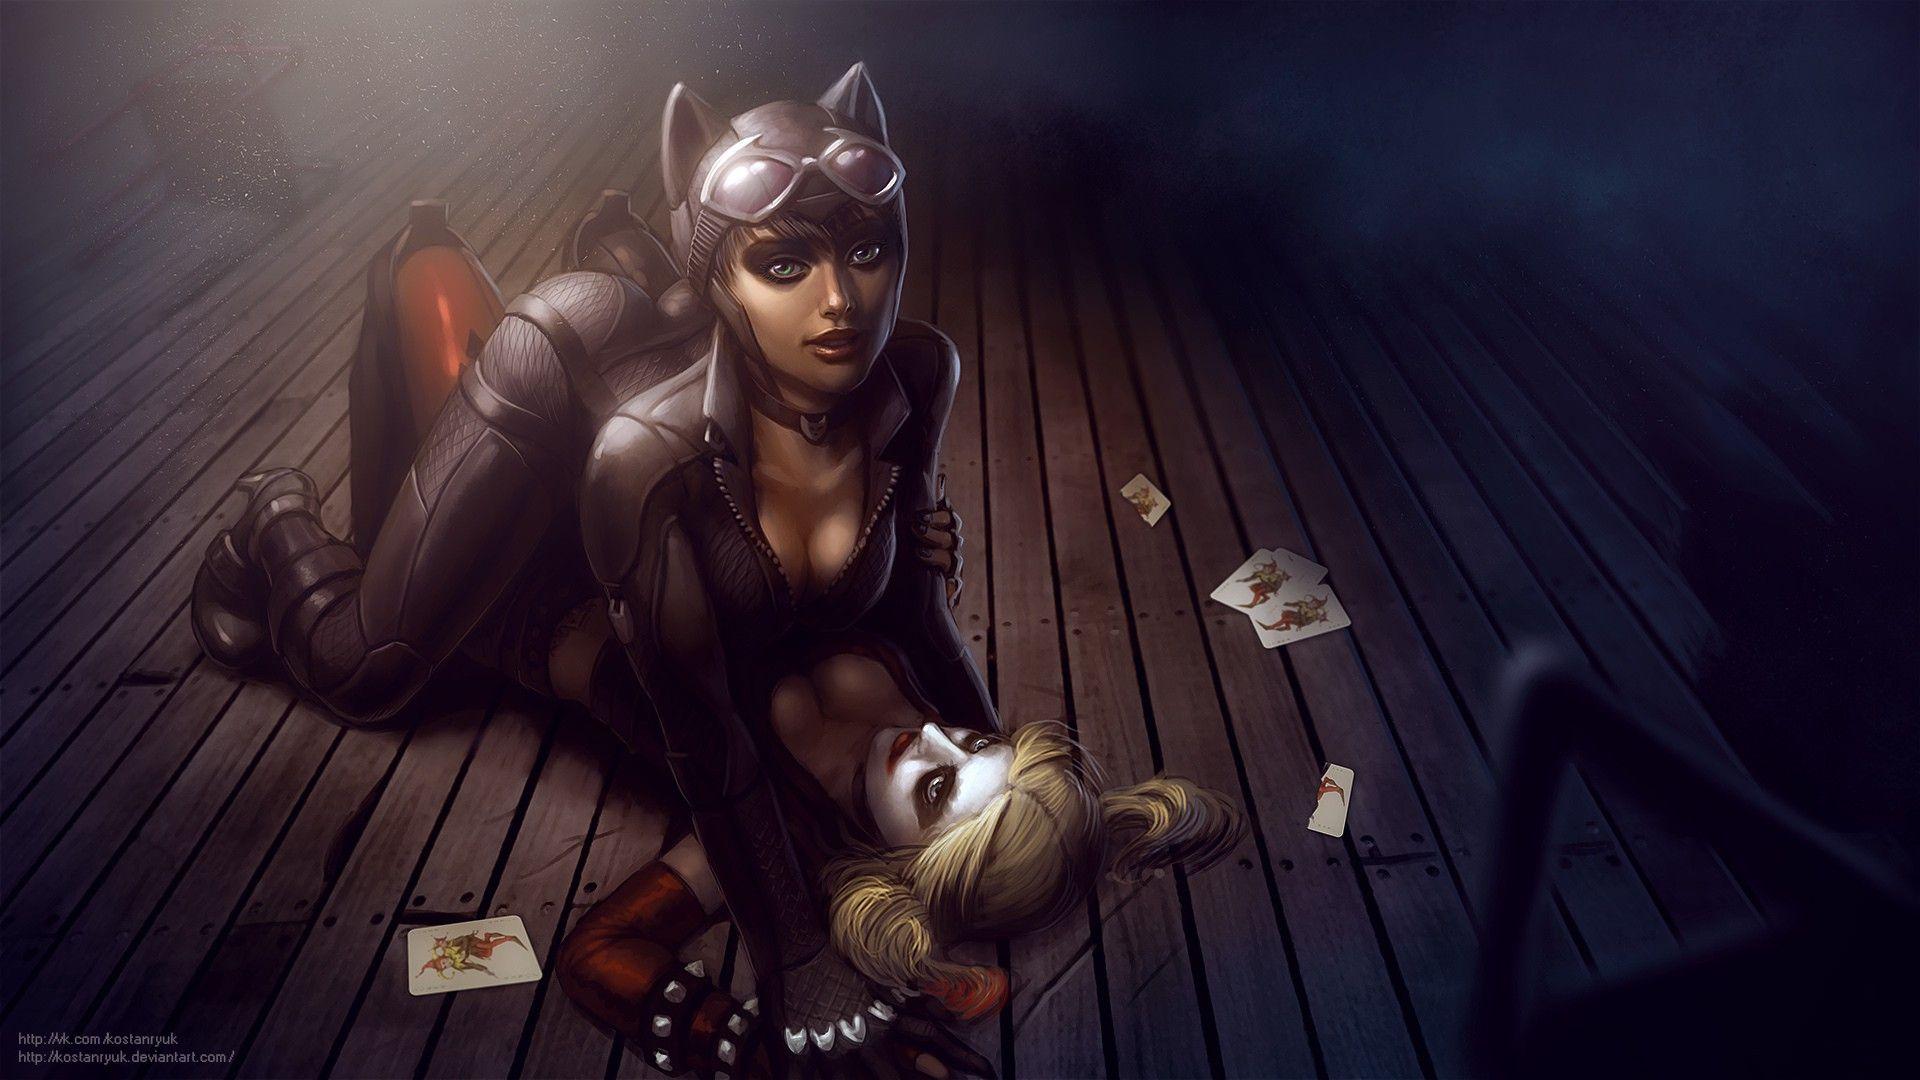 Heroes comics Catwoman hero Harley Quinn hero Warriors Fantasy Girl